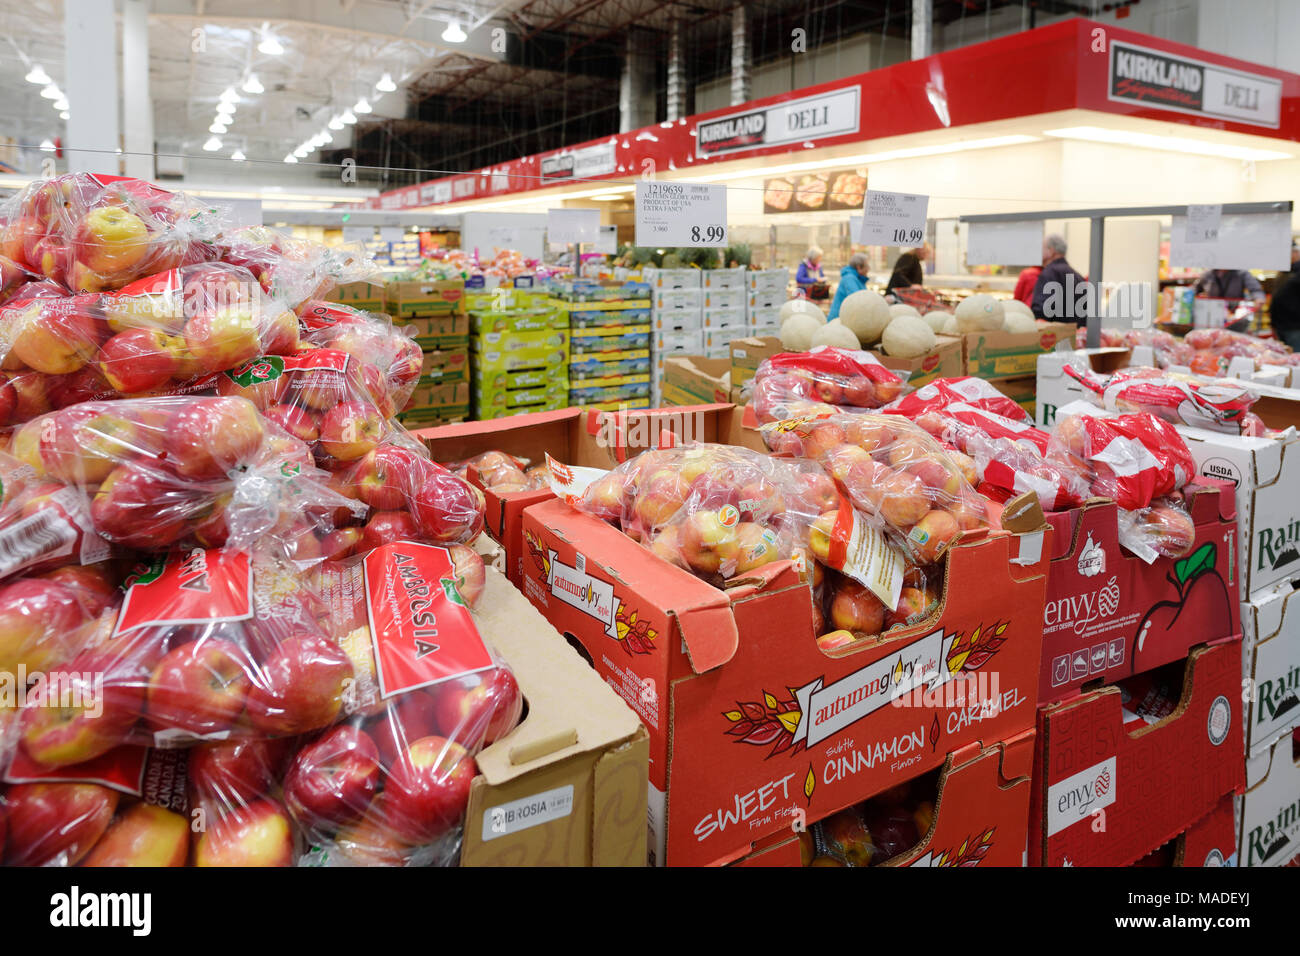 Äpfel und andere Früchte und Lebensmittel bei Costco Wholesale Mitgliedschaft Lagerverkauf Innenraum essen Abschnitt. Grapefruits, Zitronen und Limetten. British Col Stockfoto